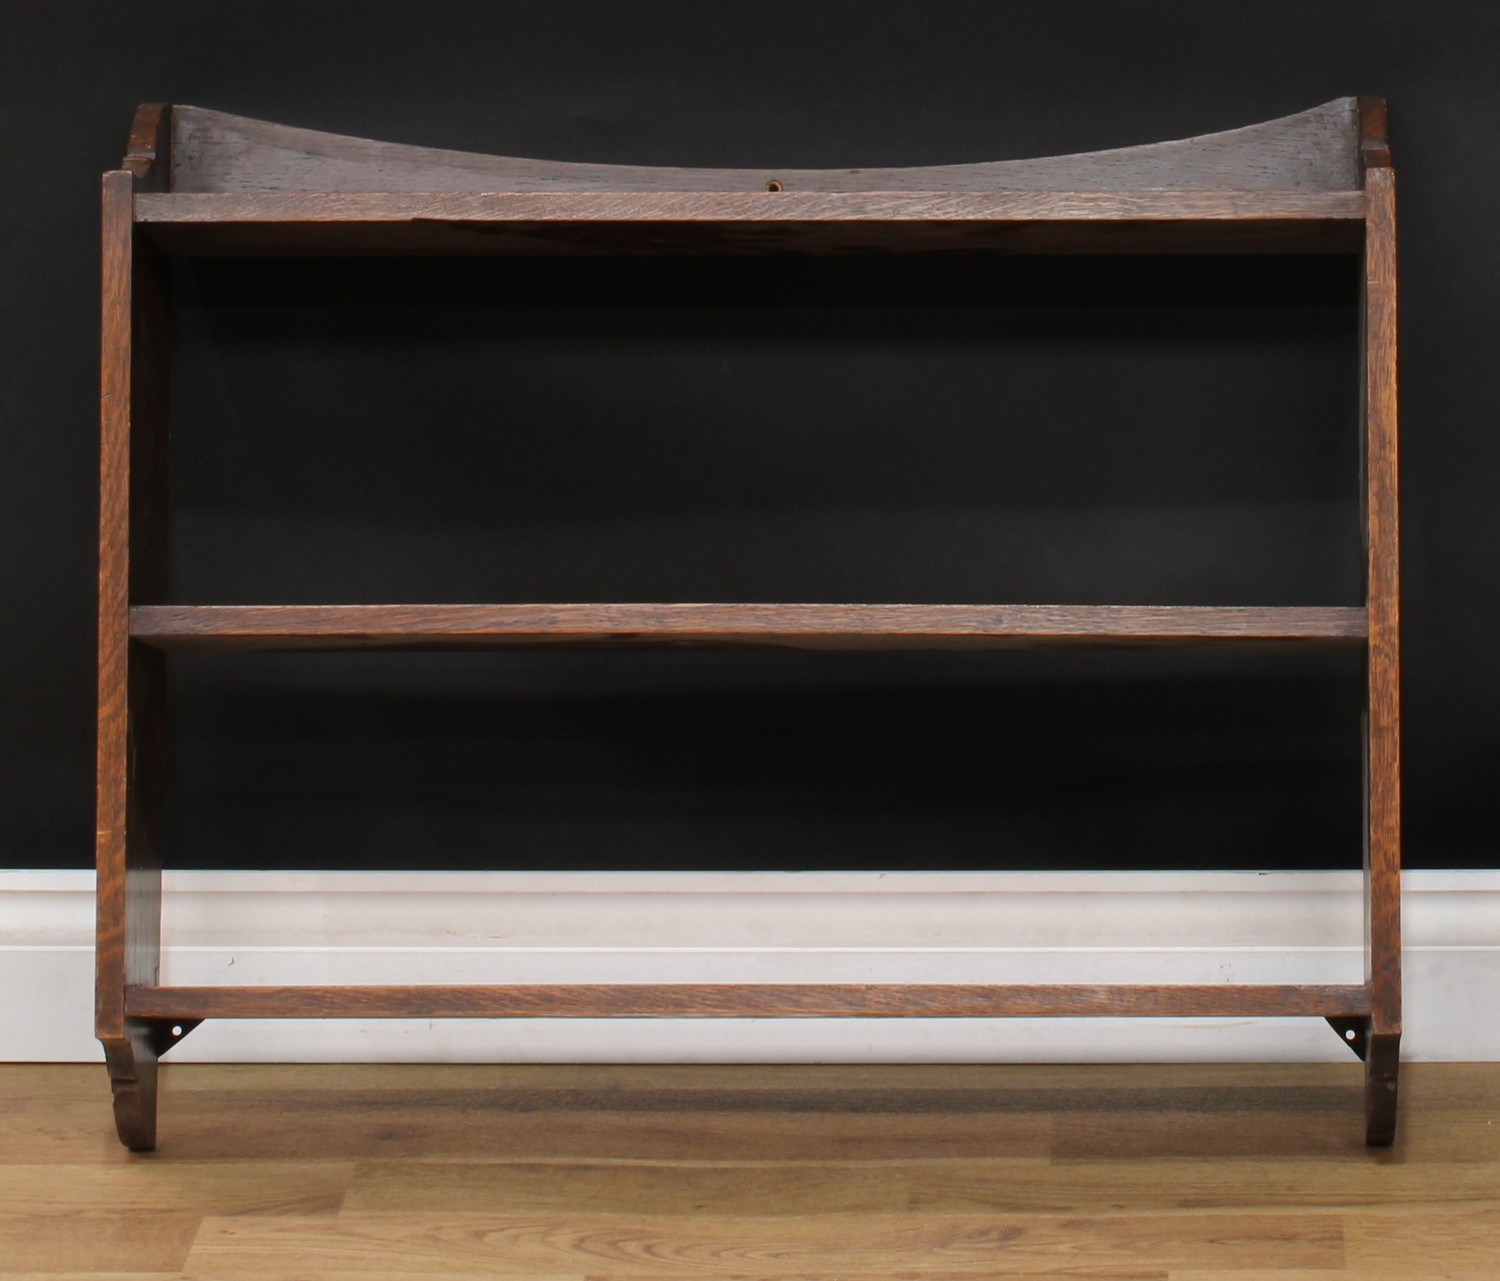 An oak wall-hanging bookcase or wall shelf, 63.5cm high, 76.5cm wide, 16.5cm deep; an open bookcase, - Bild 4 aus 5